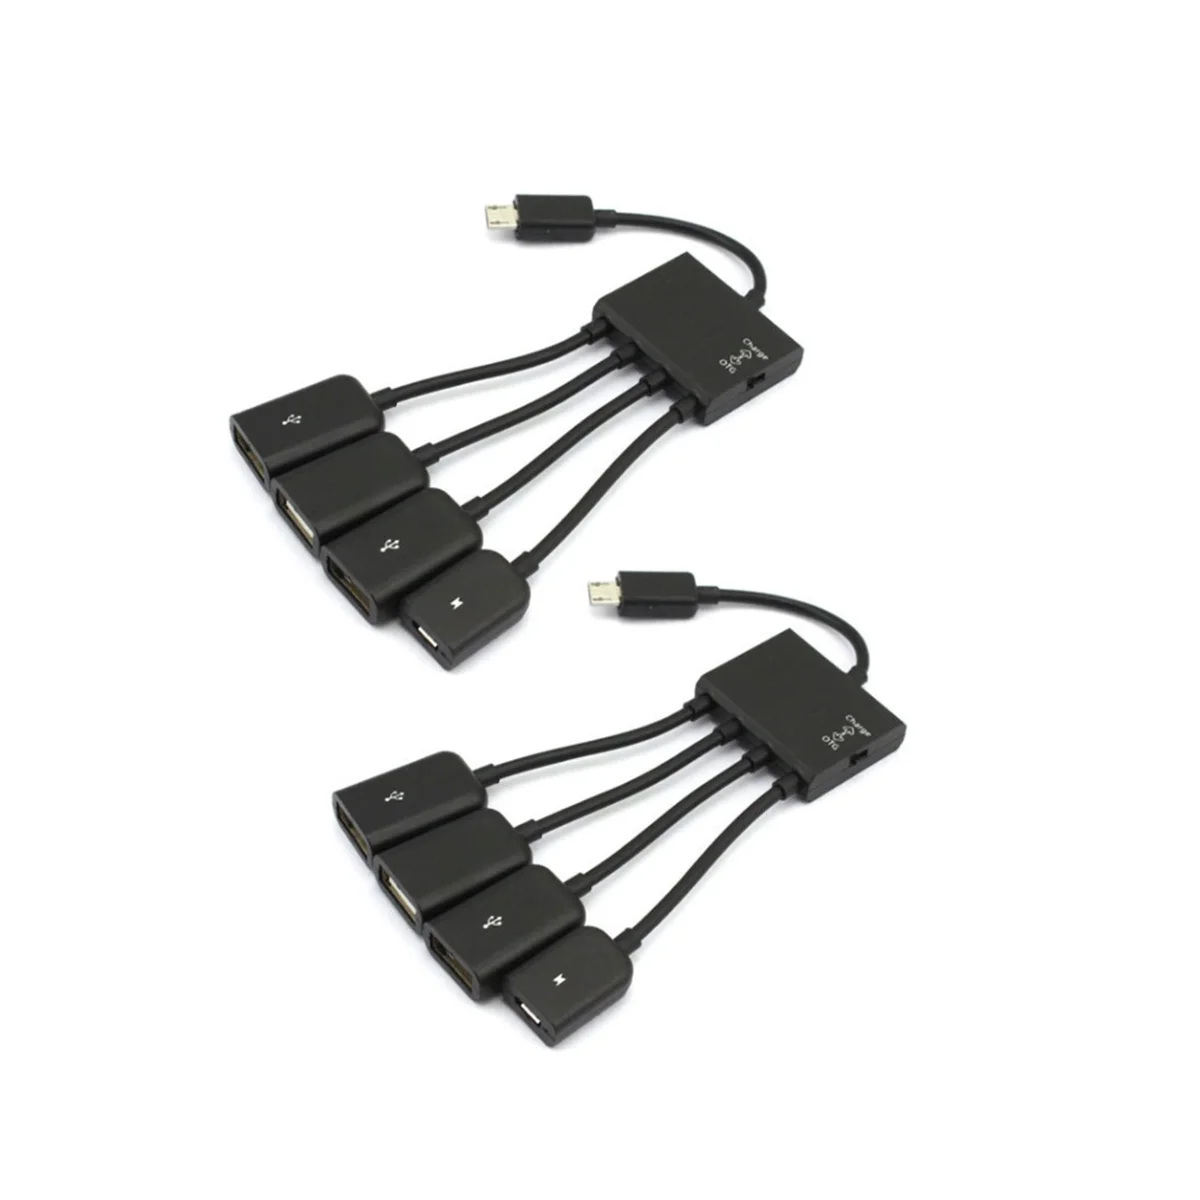 

2 шт. 4 порта Micro-USB OTG Hub Кабельный разъем Spliter Adapter для Android планшета компьютера ПК Power Charging